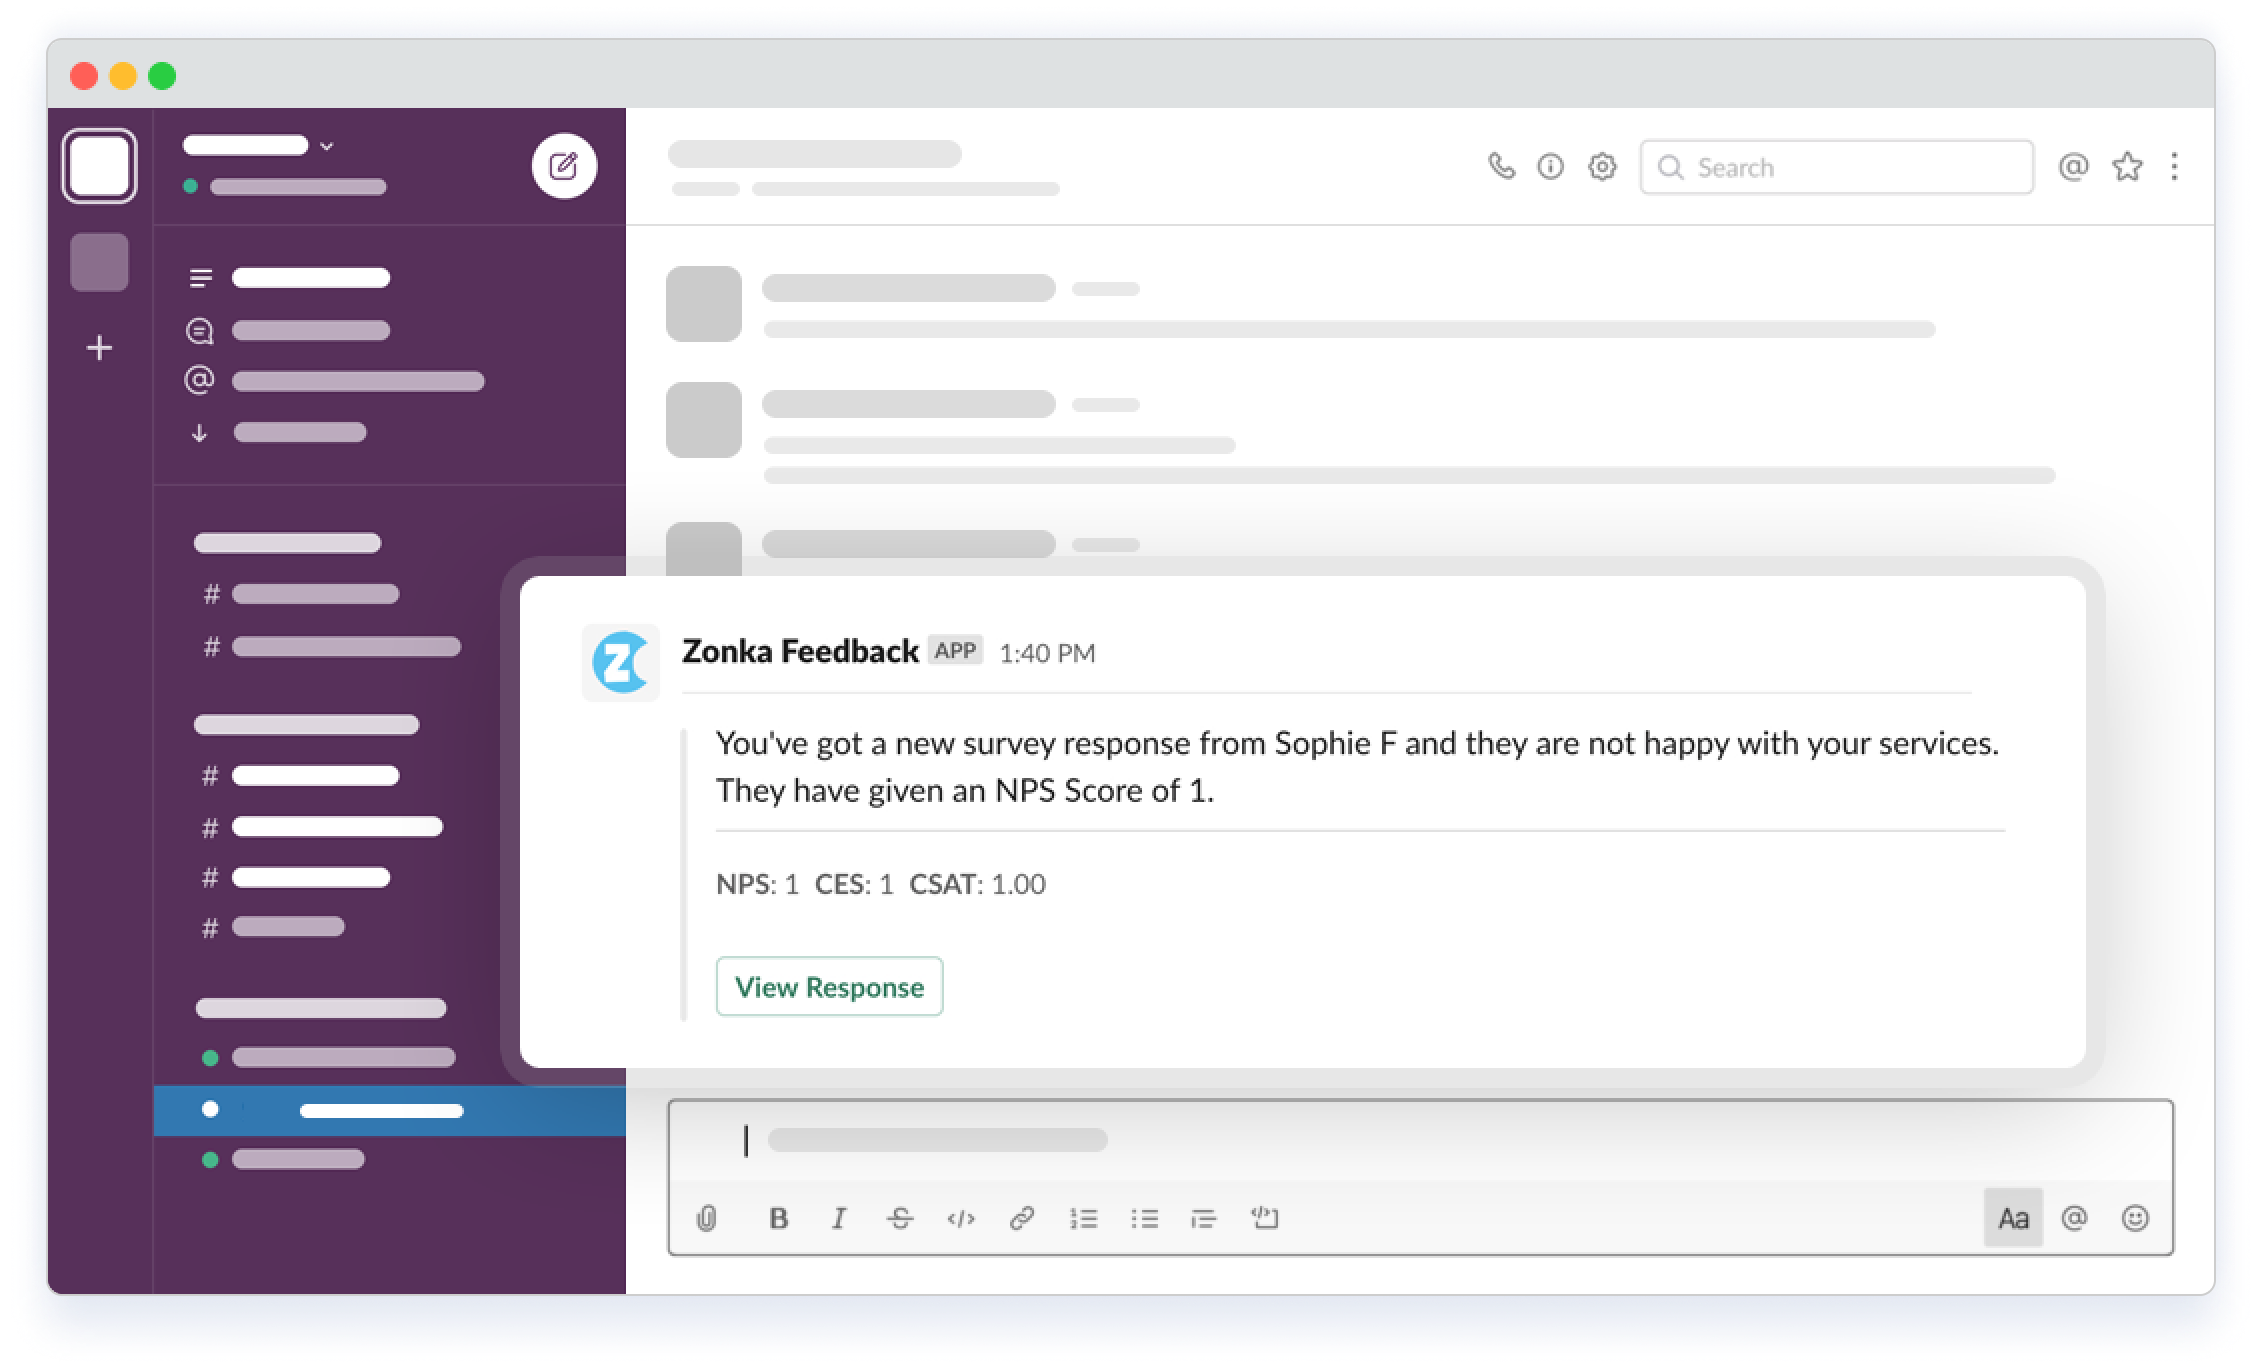 Zonka Feedback Notifications in Slack